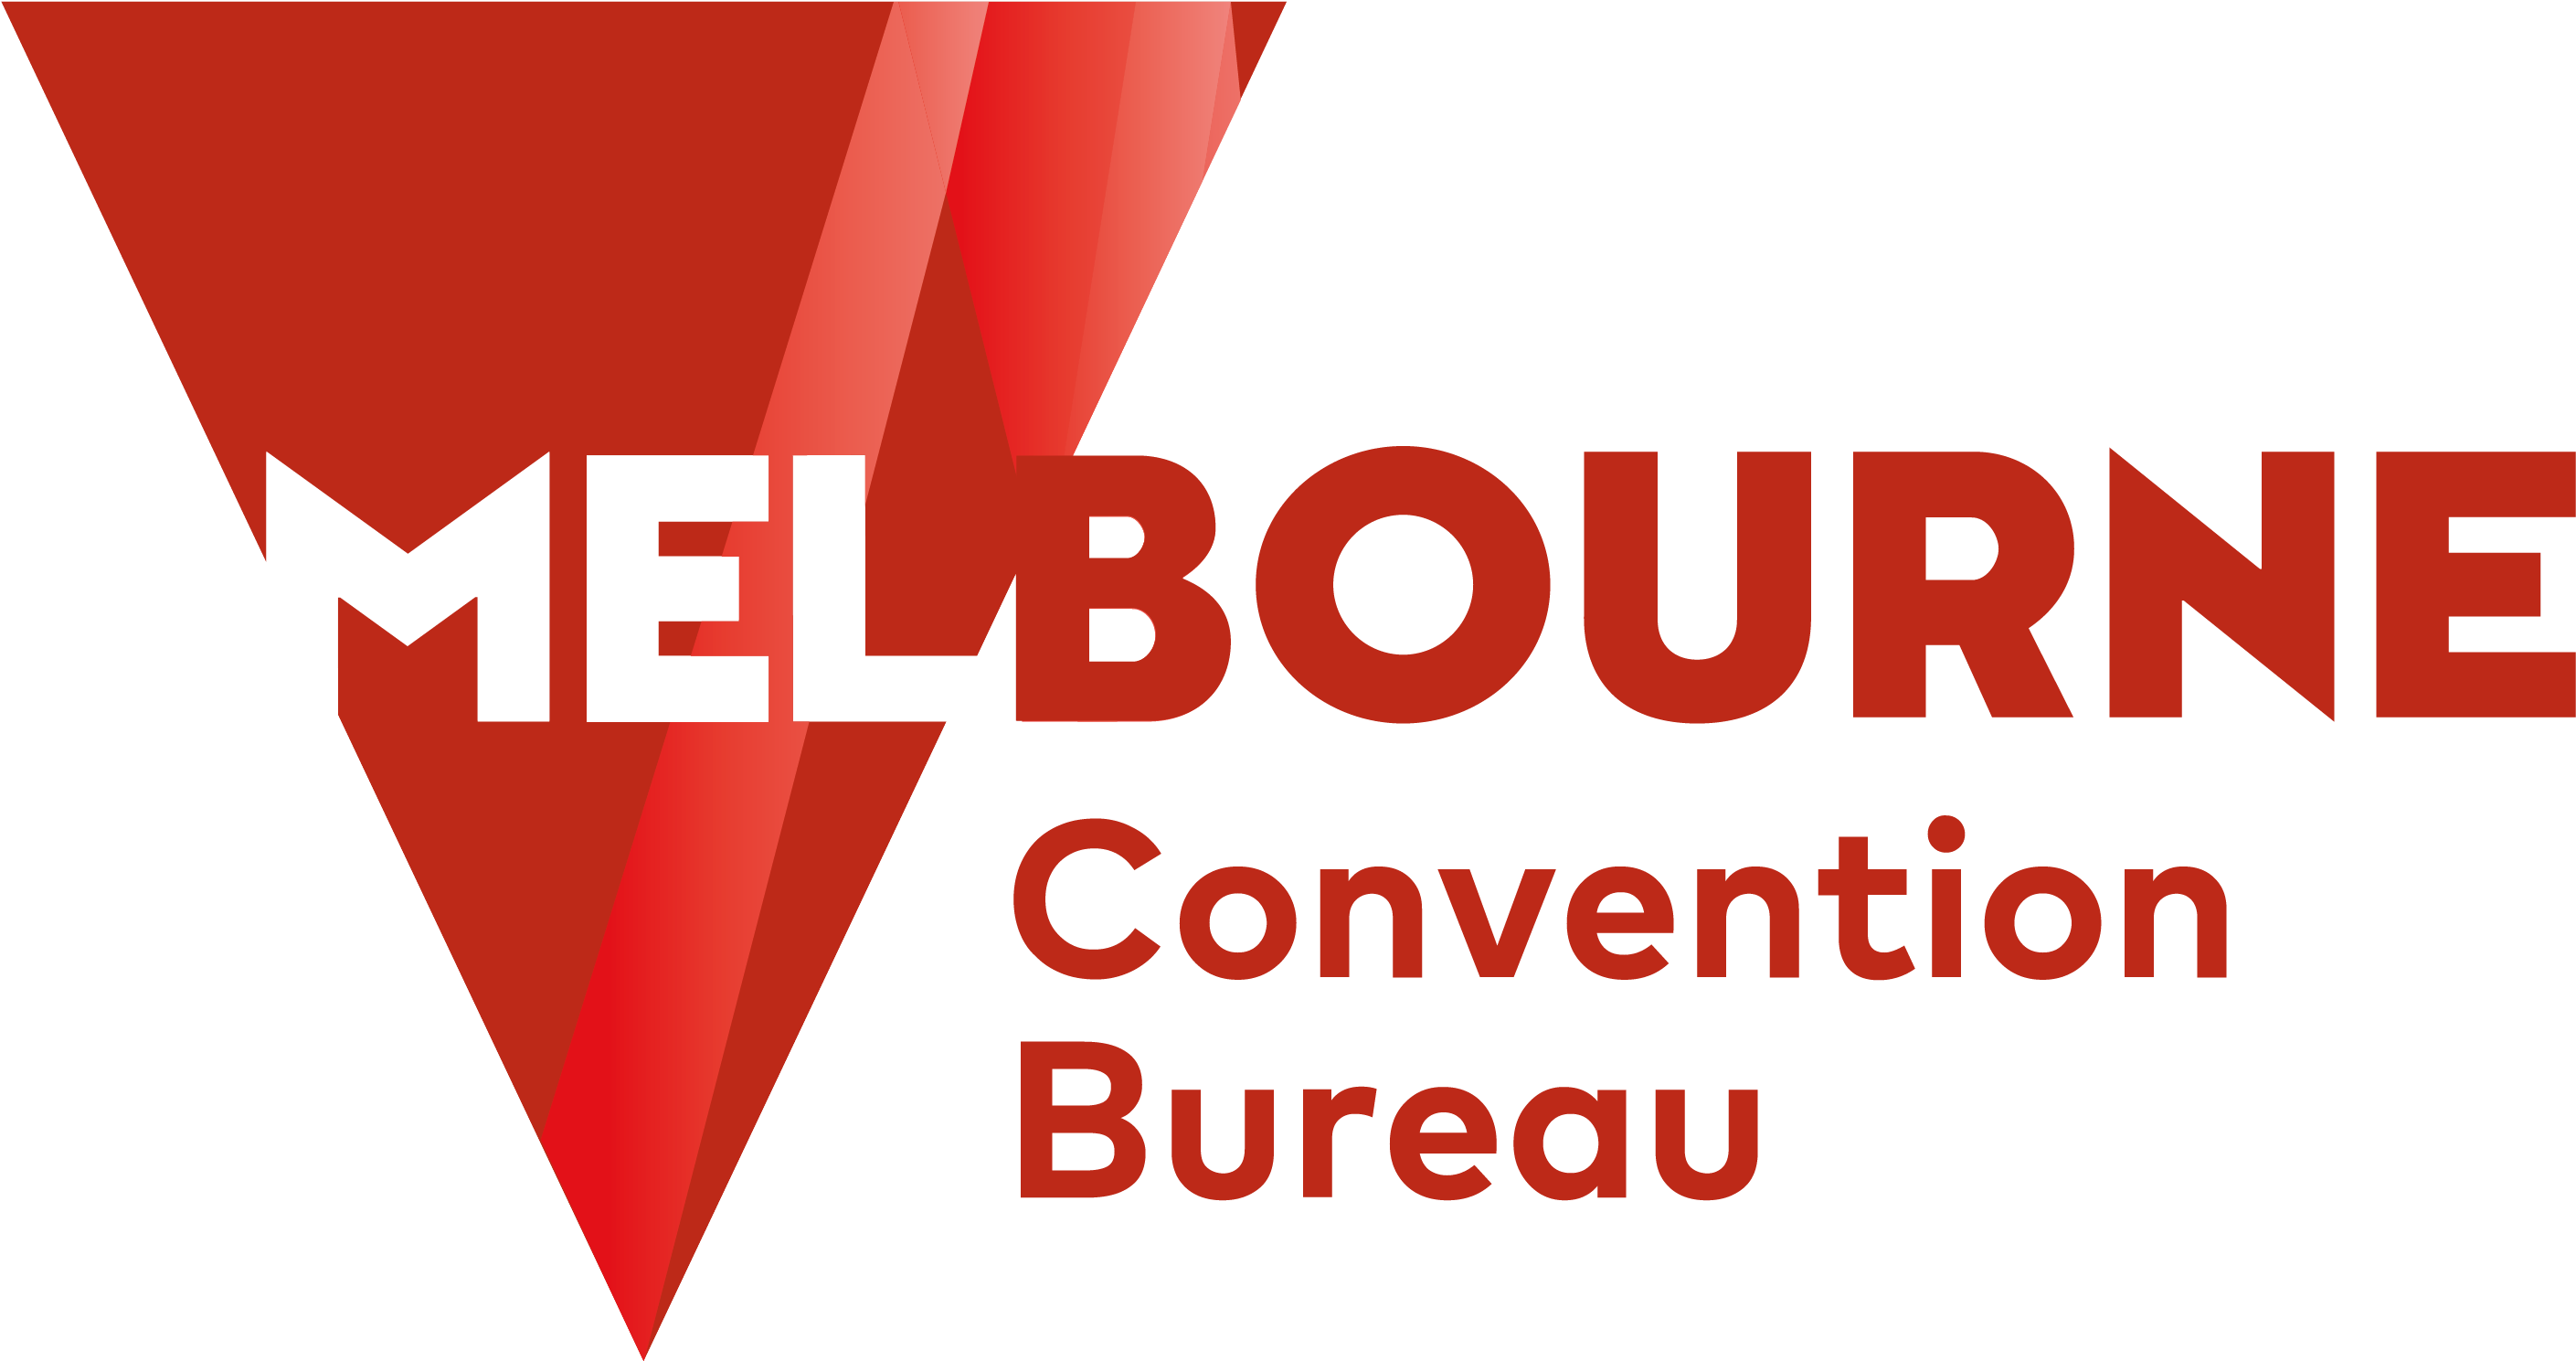 Melbourne Convention Bureau - Big Ten Tournament 2012 (3263x1579)